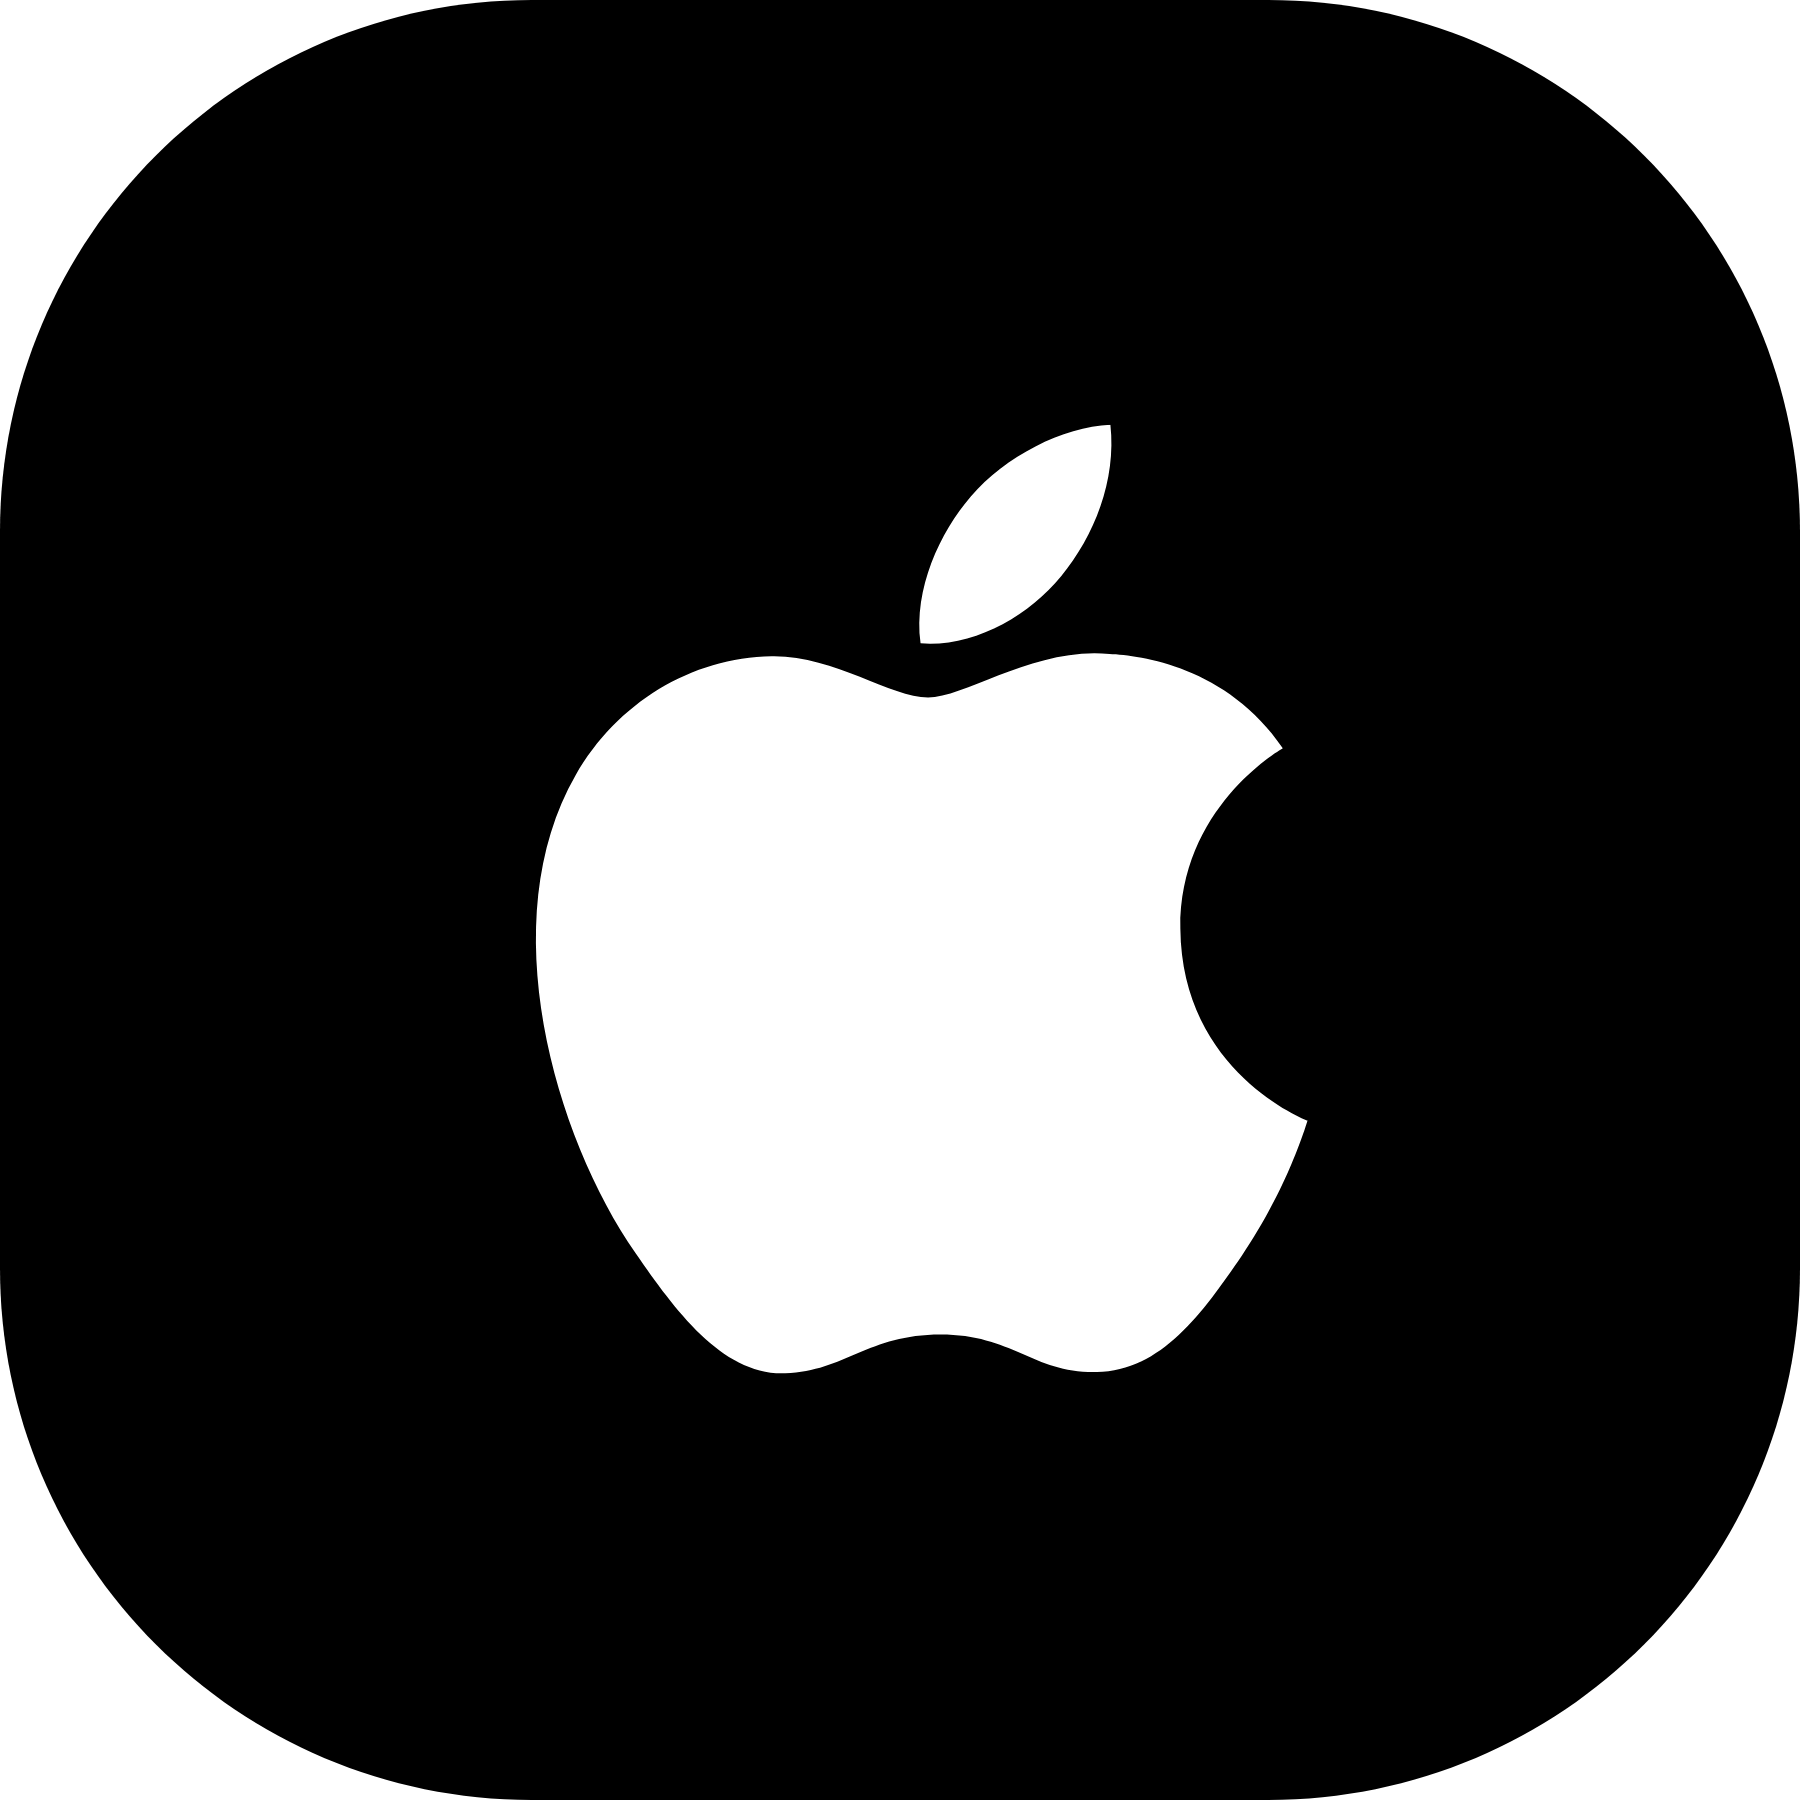 Portáteis Apple (MacBook)